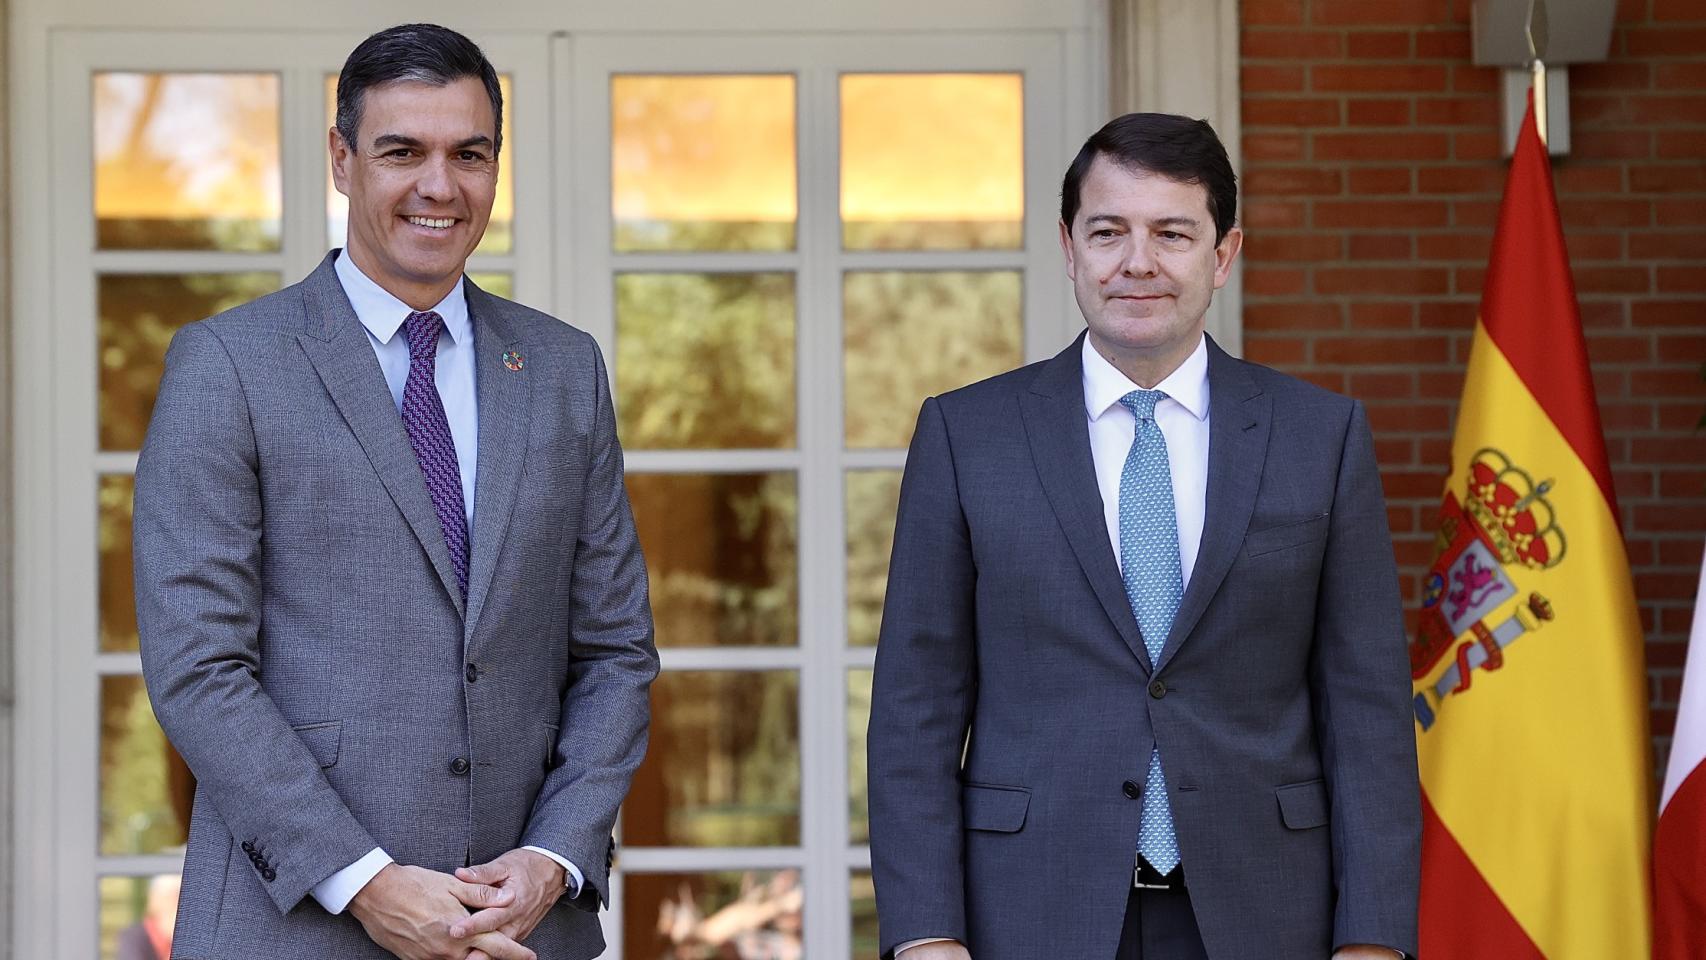 El presidente del Gobierno, Pedro Sánchez, y el jefe del Ejecutivo de Castilla y León, Alfonso Fernández Mañueco, durante una reunión en el Palacio de la Moncloa, en julio de 2022.